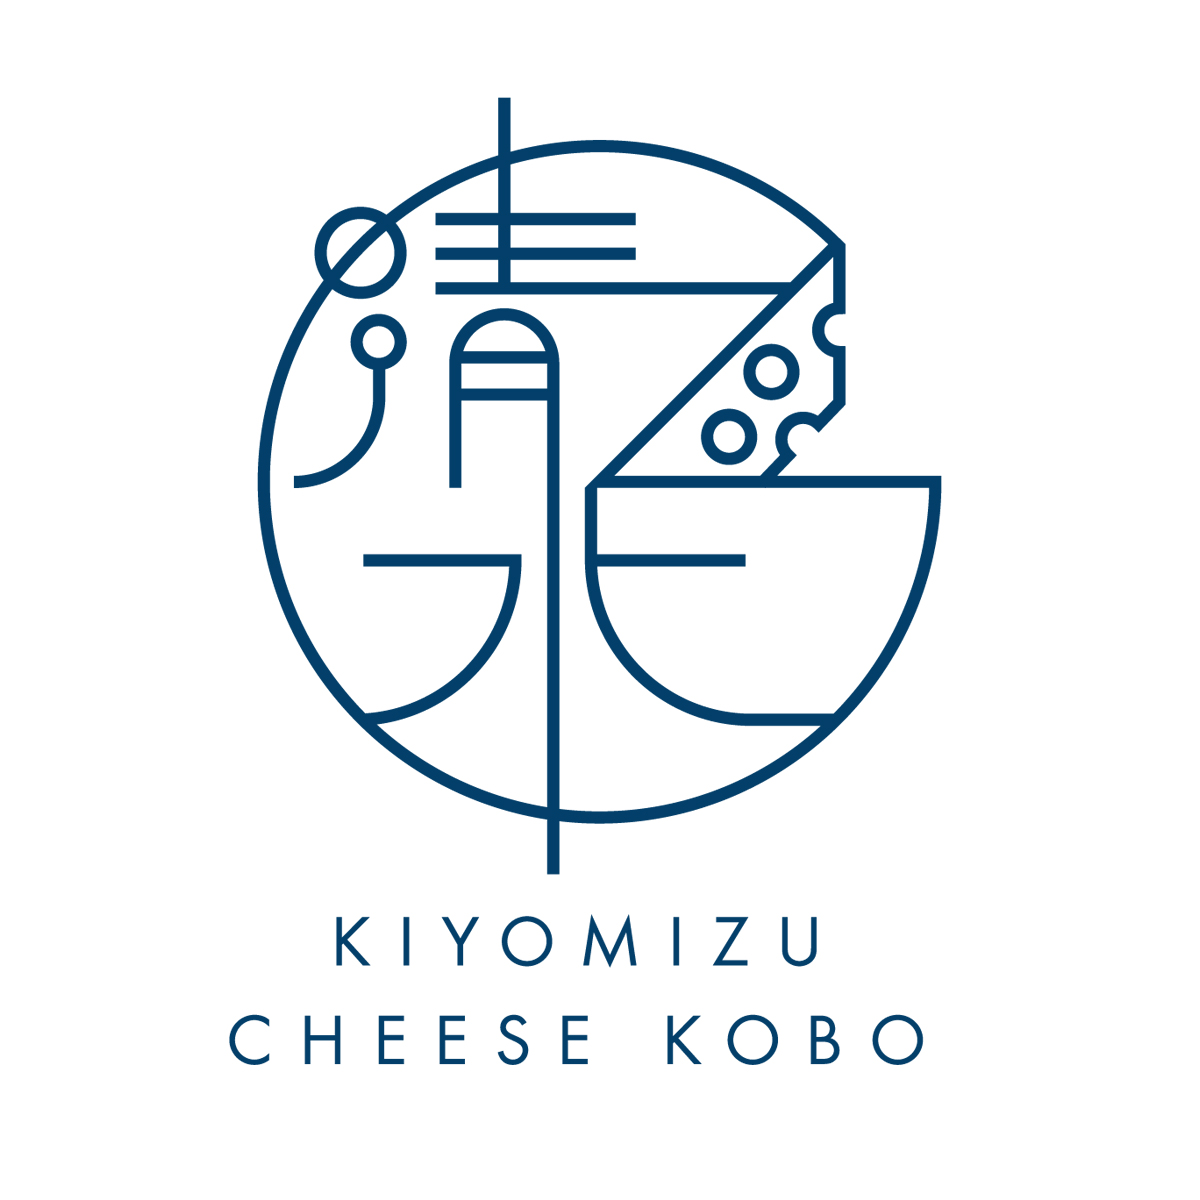 清水チーズ工房ロゴ